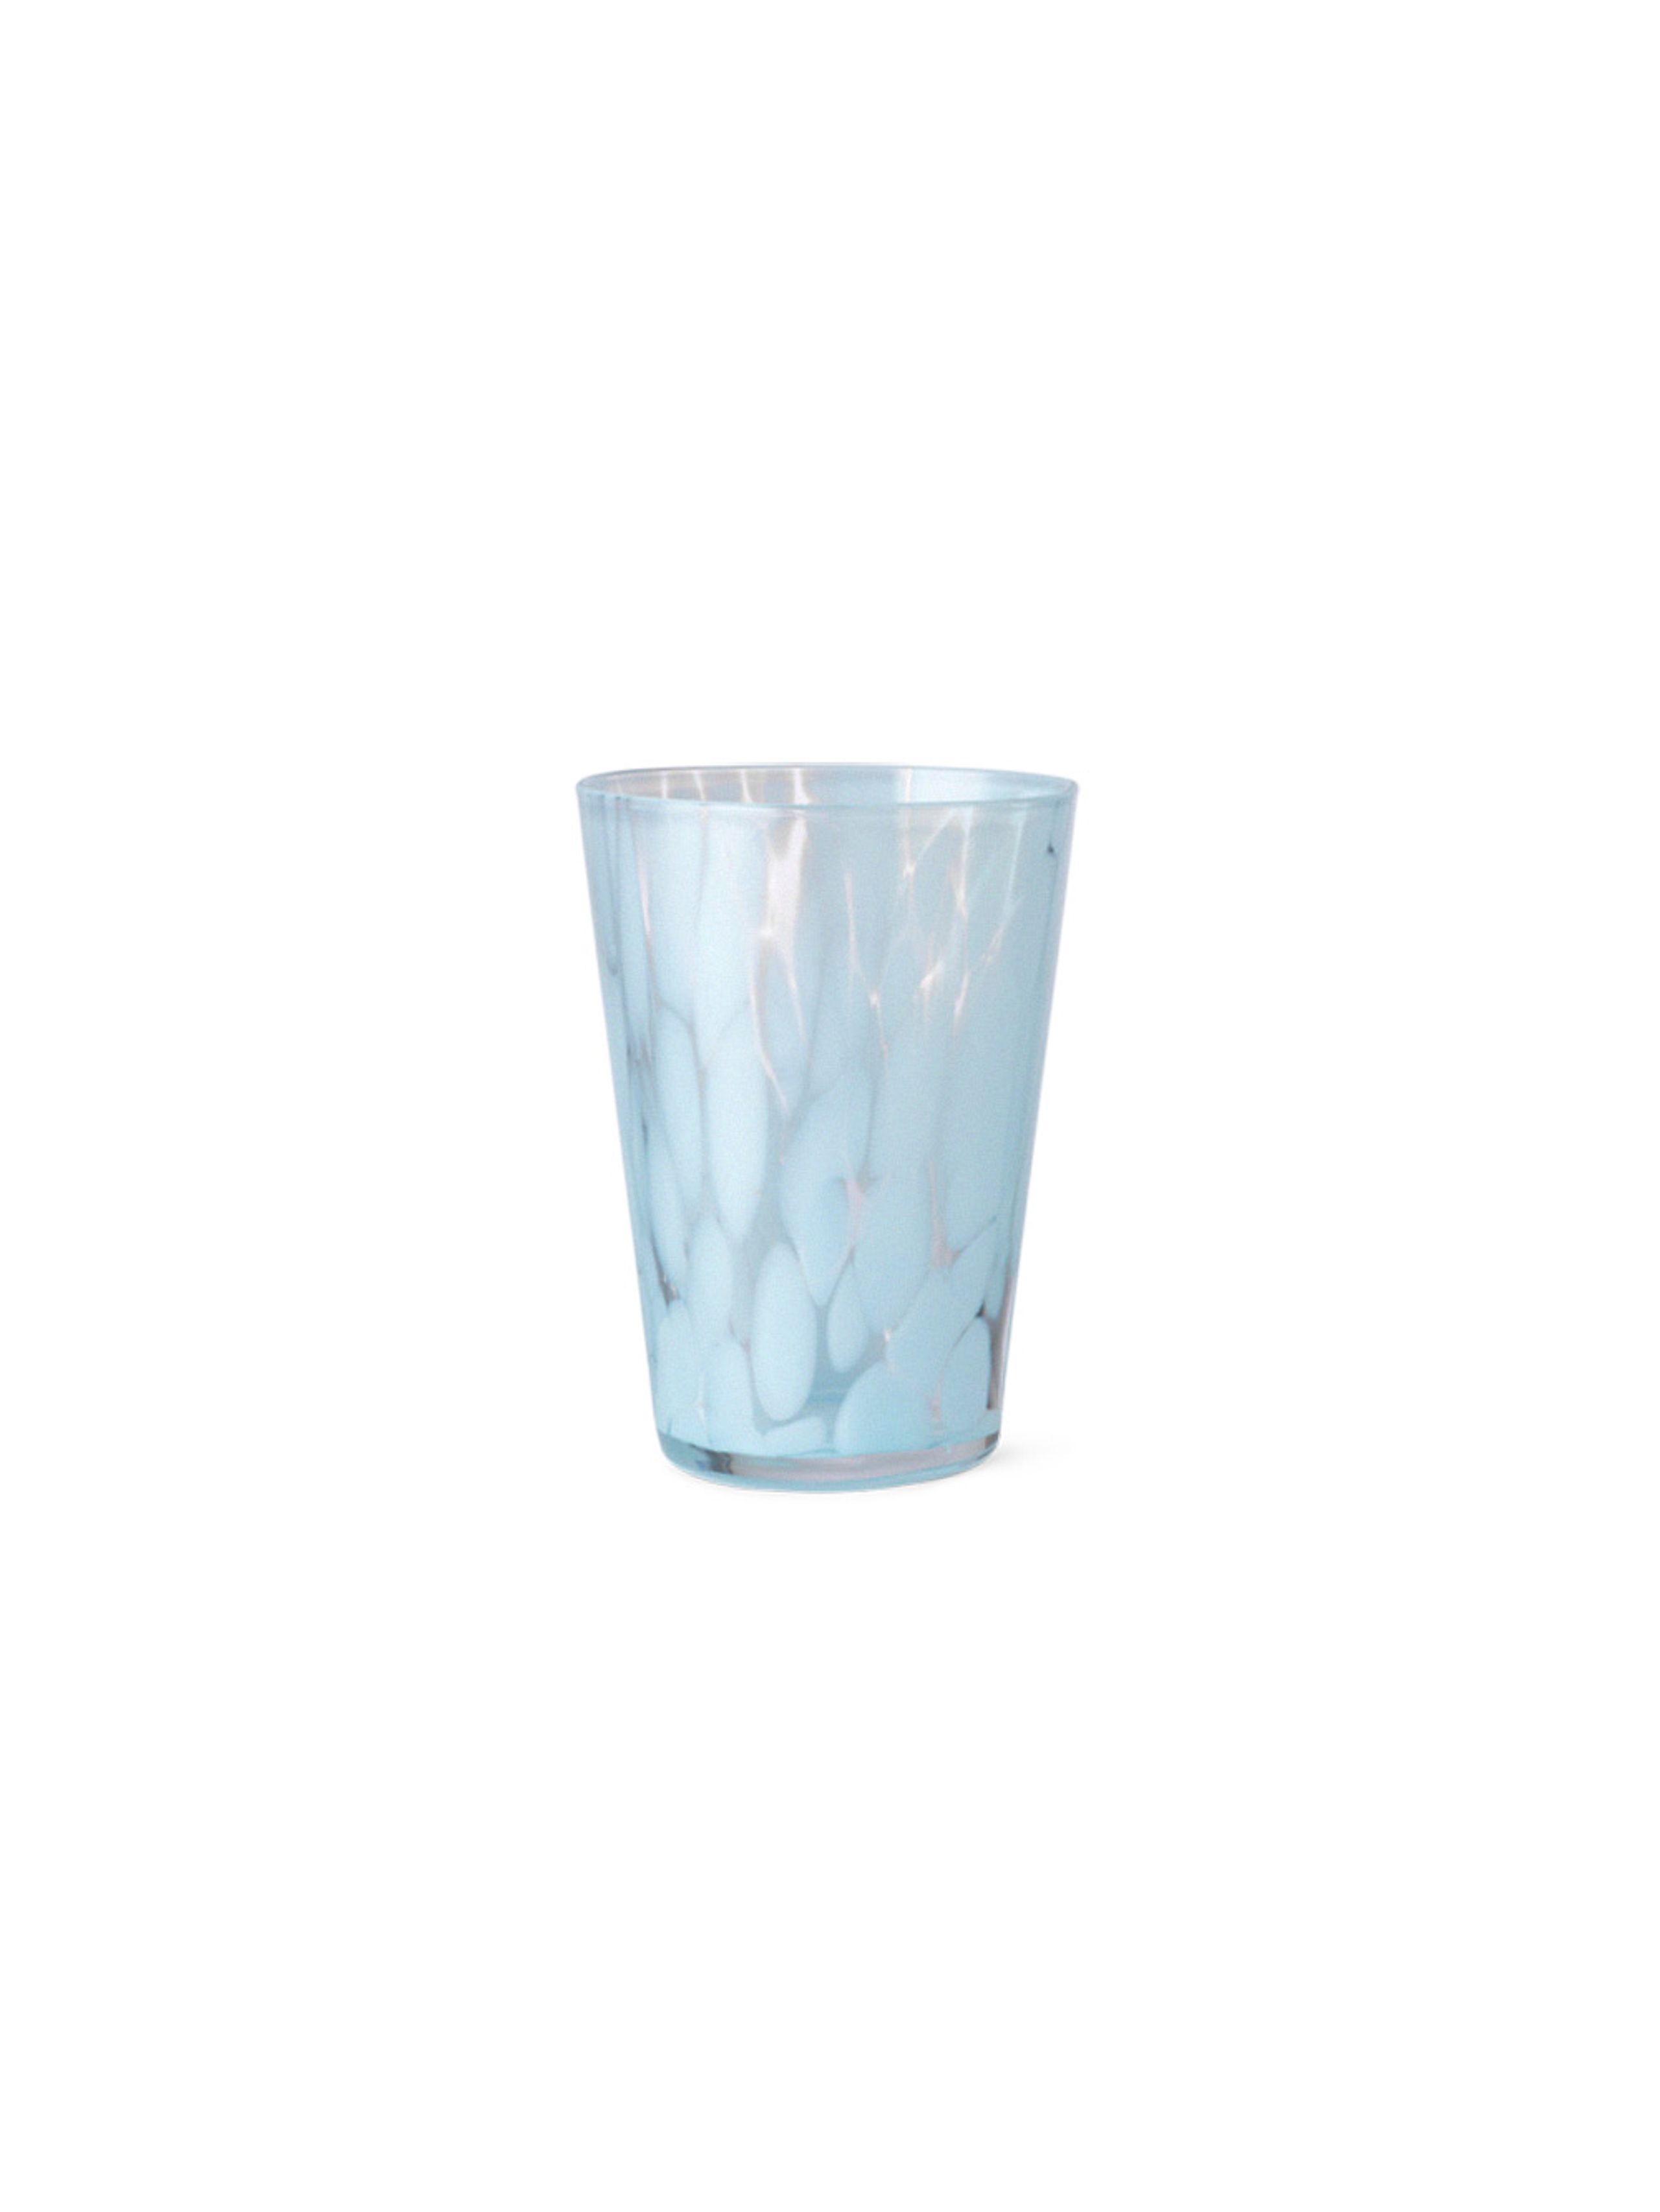 Ferm Living - Vase - Casca Glass - Pale Blue